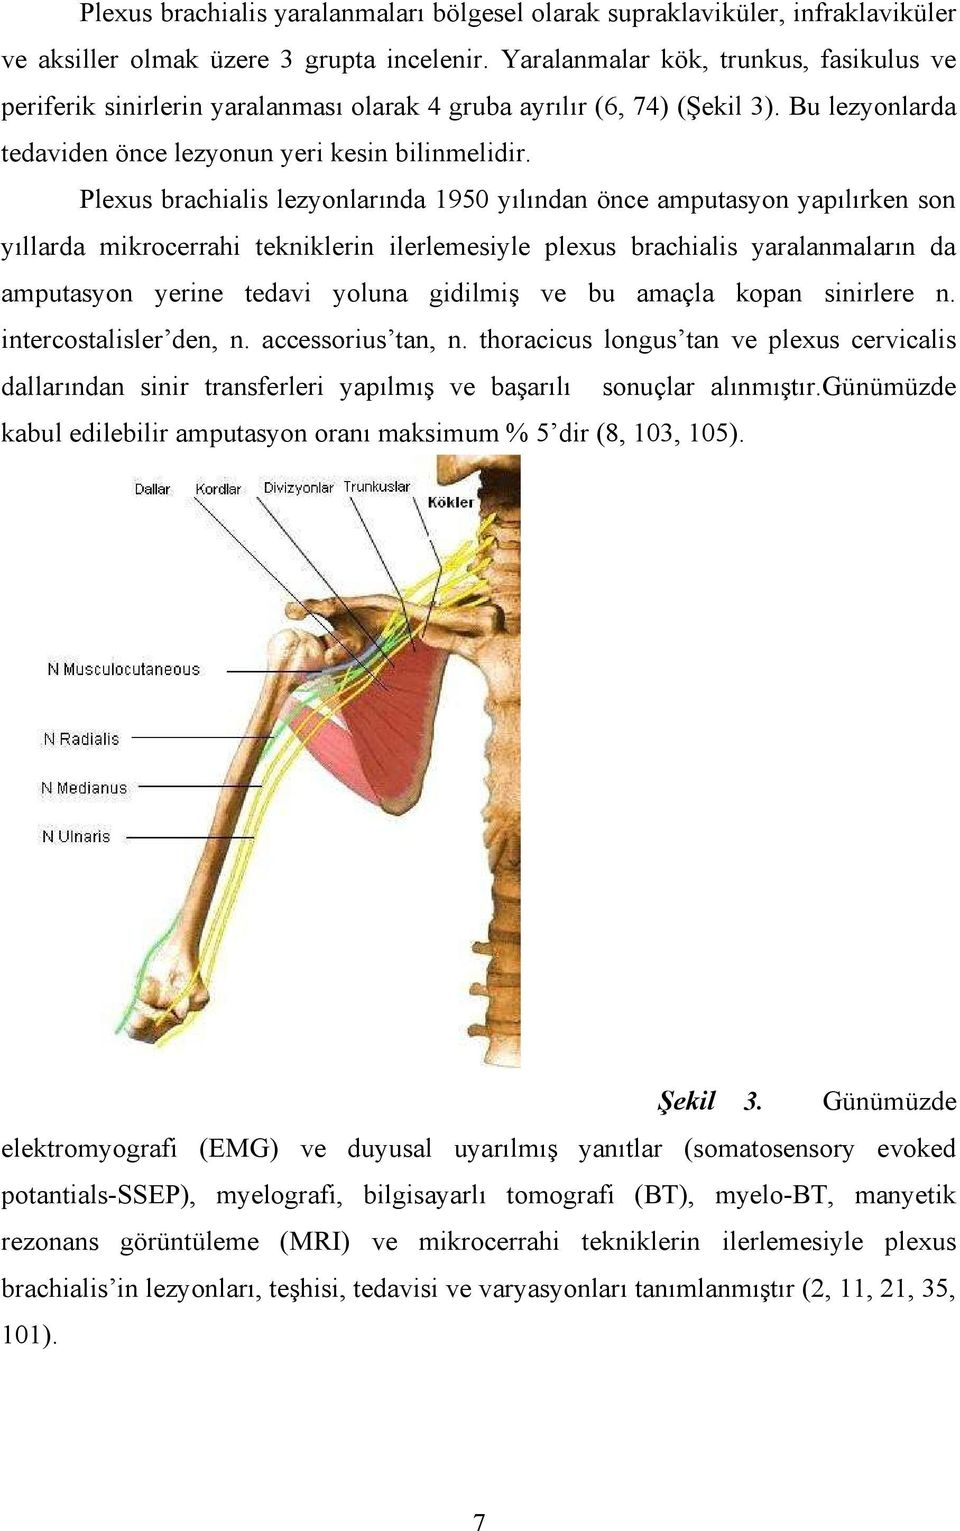 Plexus brachialis lezyonlarında 1950 yılından önce amputasyon yapılırken son yıllarda mikrocerrahi tekniklerin ilerlemesiyle plexus brachialis yaralanmaların da amputasyon yerine tedavi yoluna